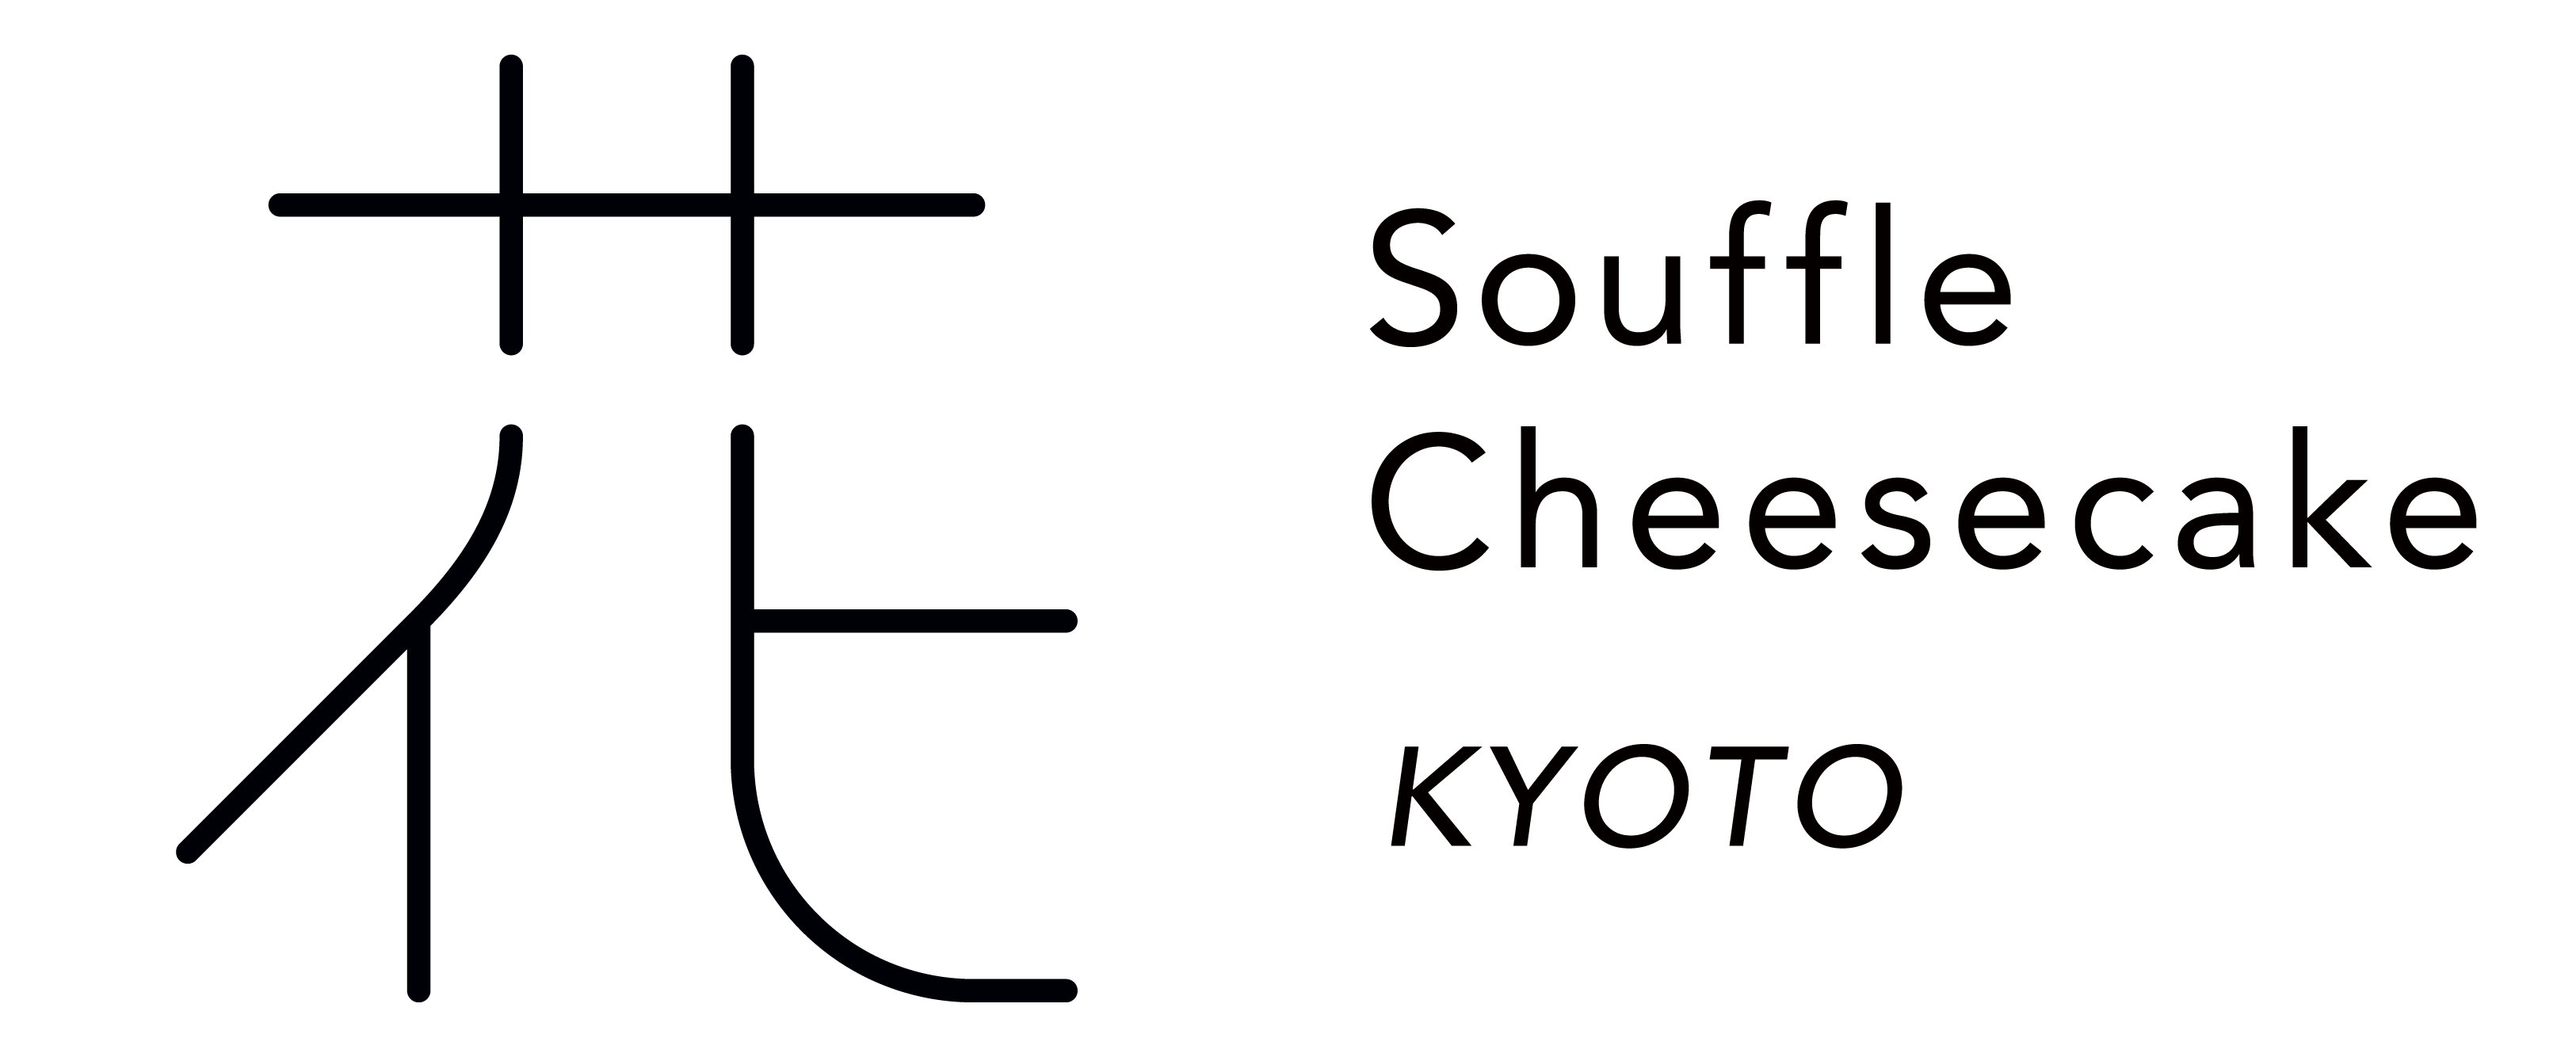 花 - Soffle Cheesecake KYOTO